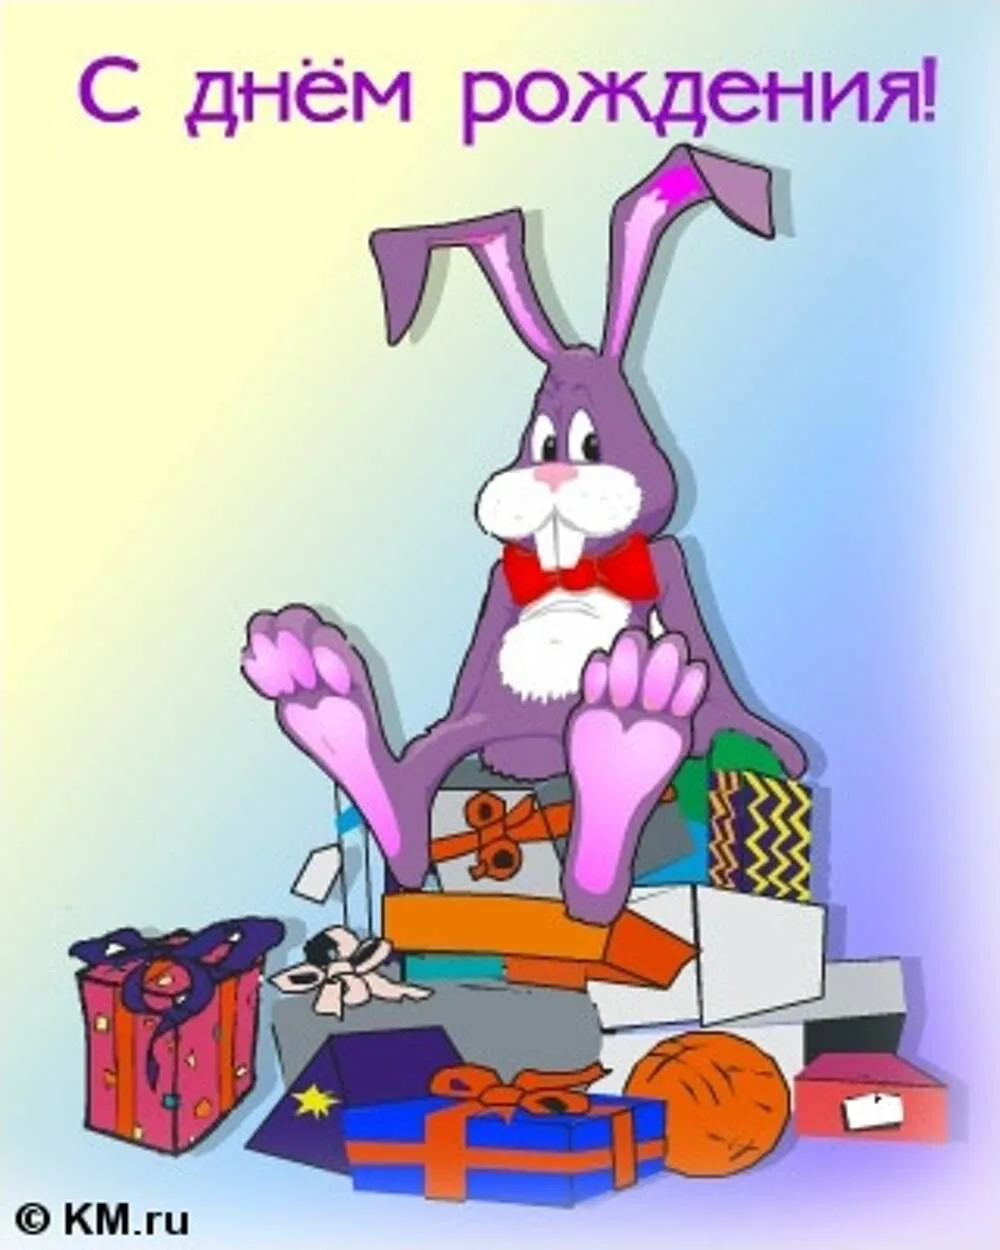 Смешное поздравление андрею. Смешные открытки с днем рождения. С днем рождения заяц. Смешные поздравления с днем рождения. Открытка с днём рождения с зайцем.